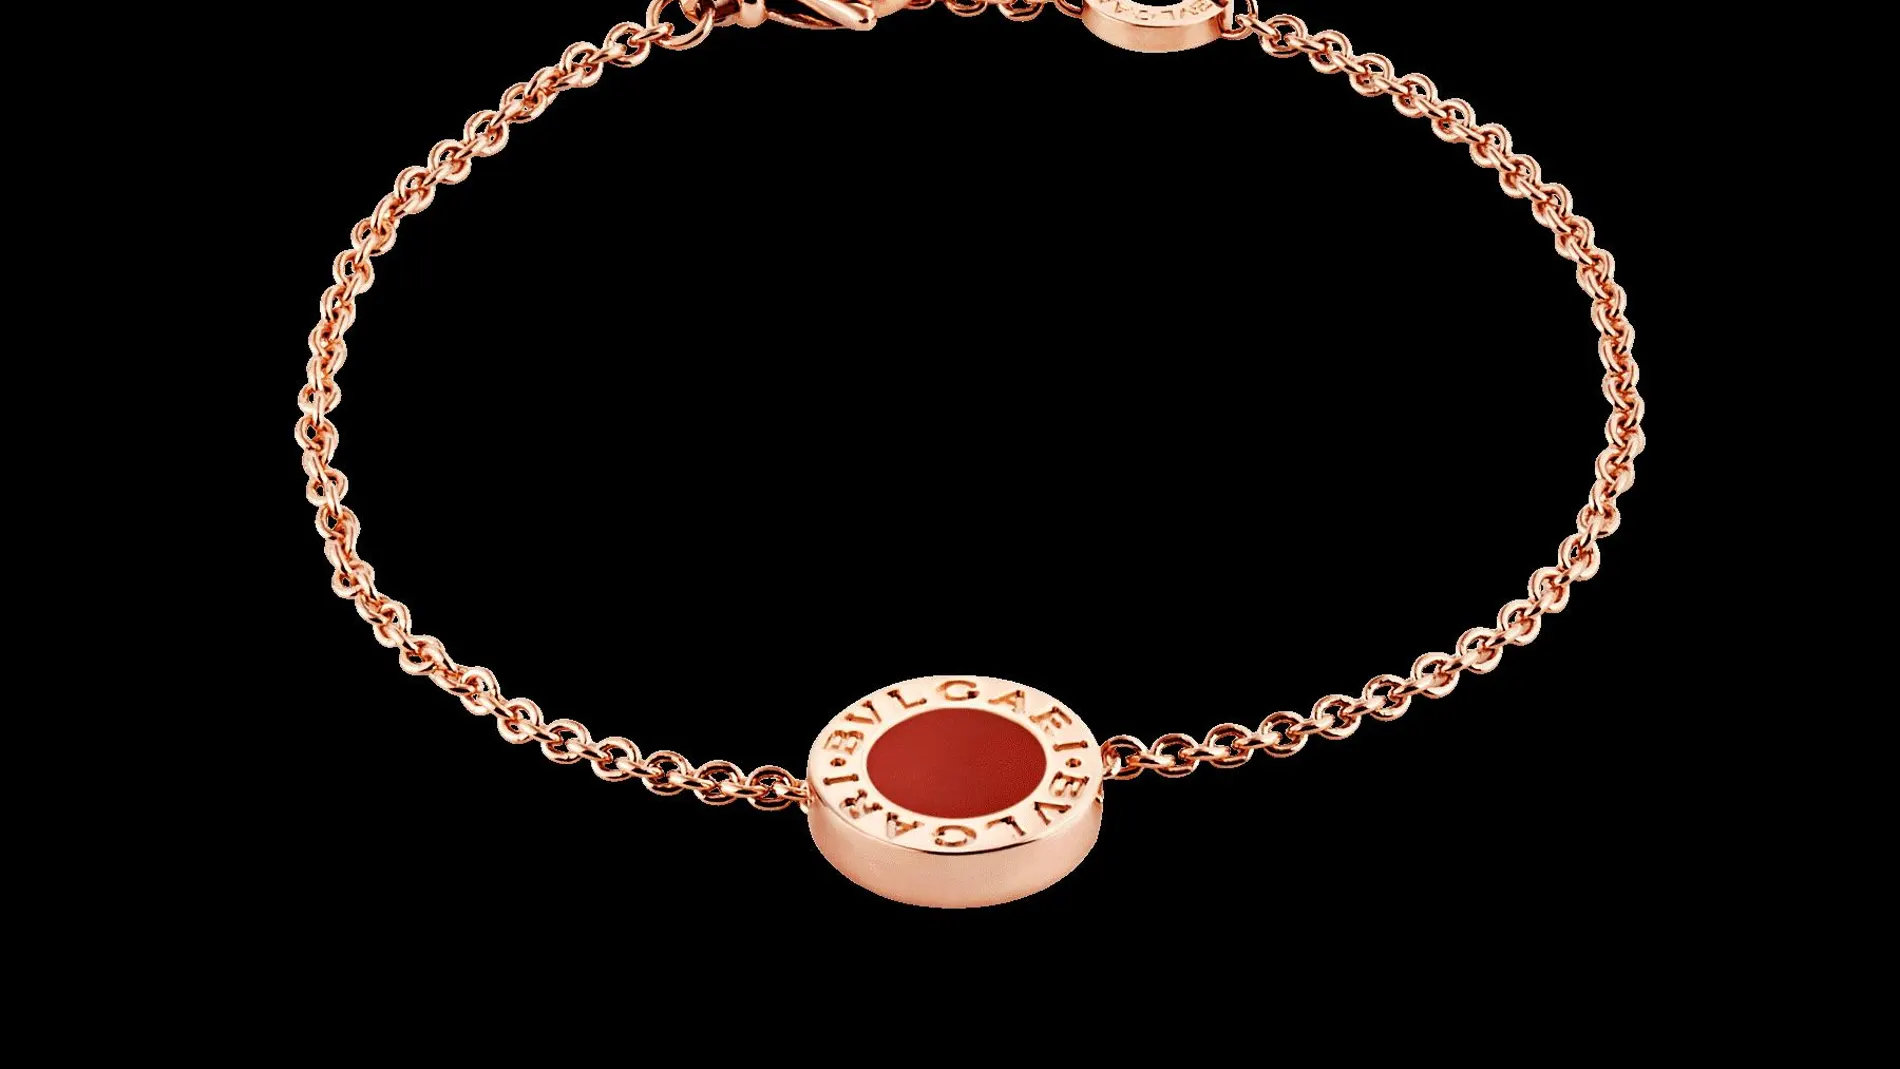 Las pulseras de la firma combinan con los collares y broches que dan un toque sofisticado a los atuendos.